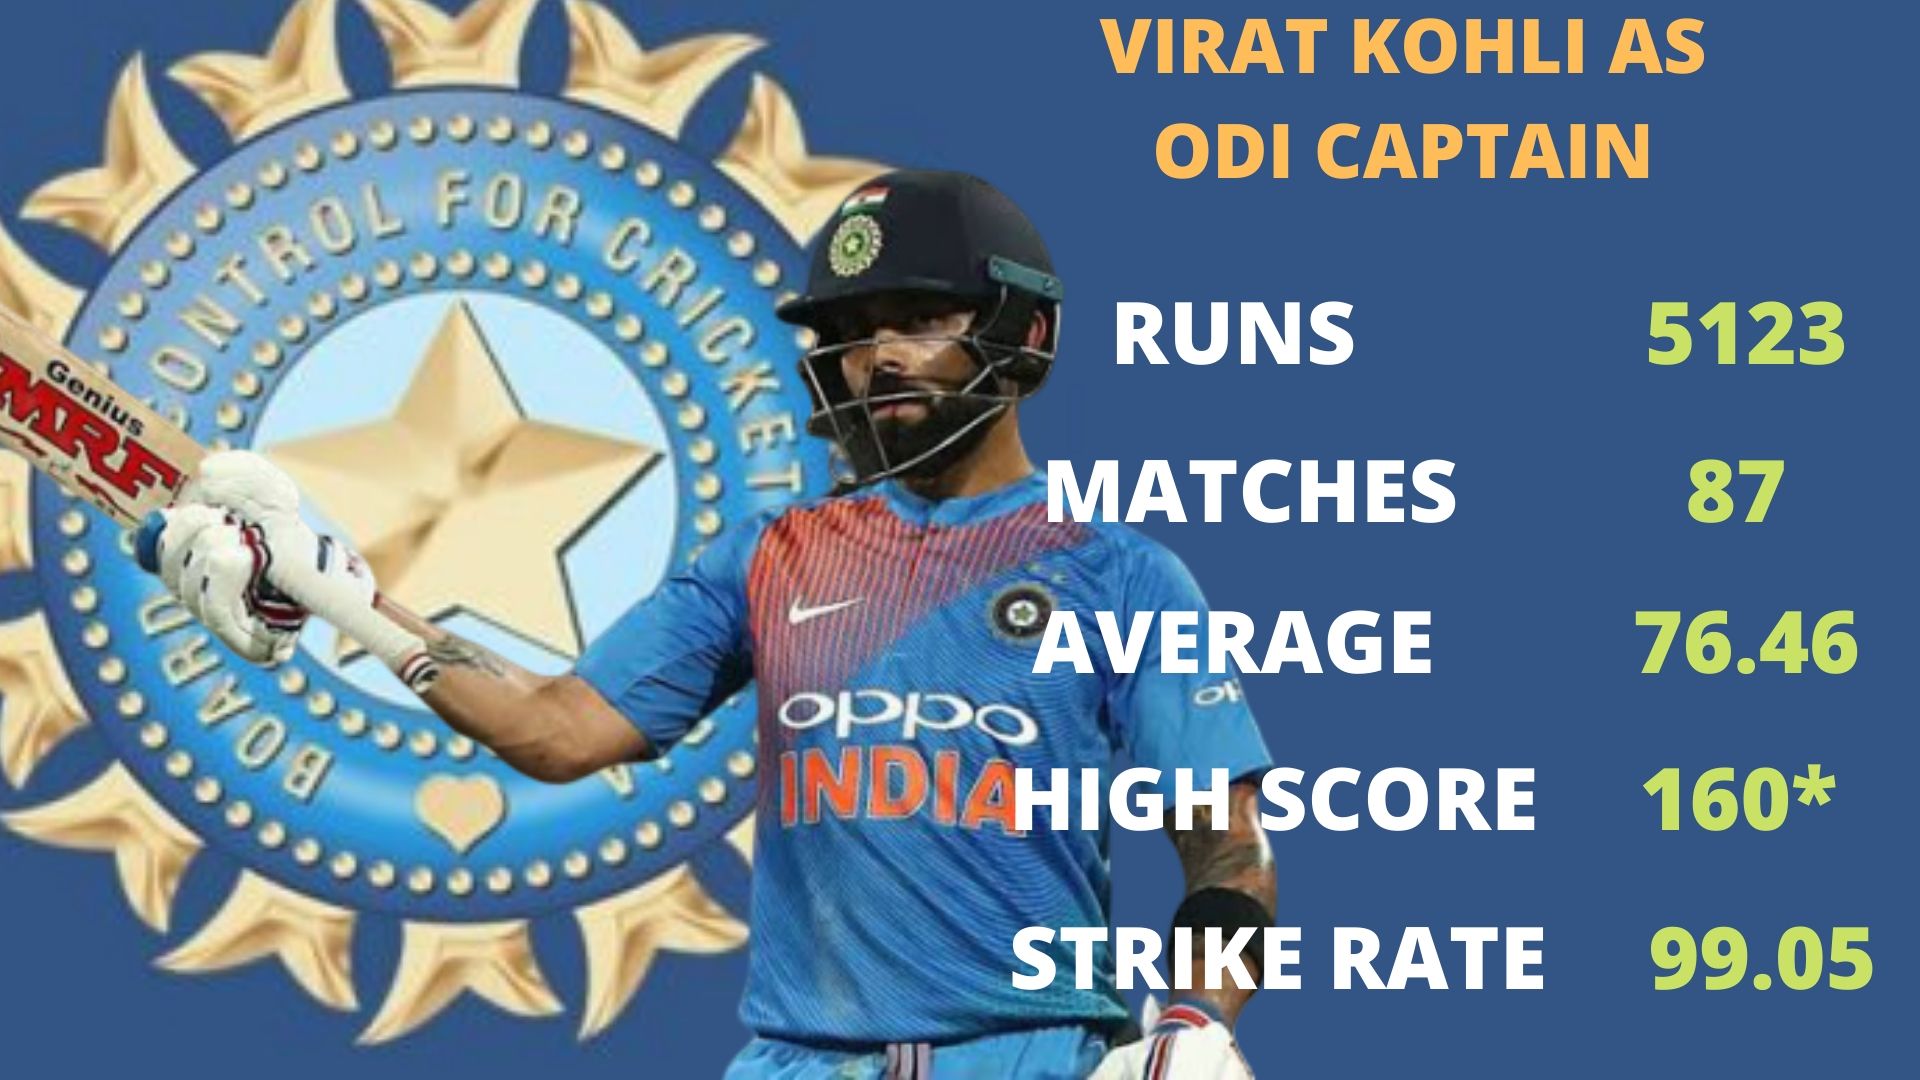 NZ vs IND, 1st ODI: Skipper Kohli surpasses Ganguly in elite India list